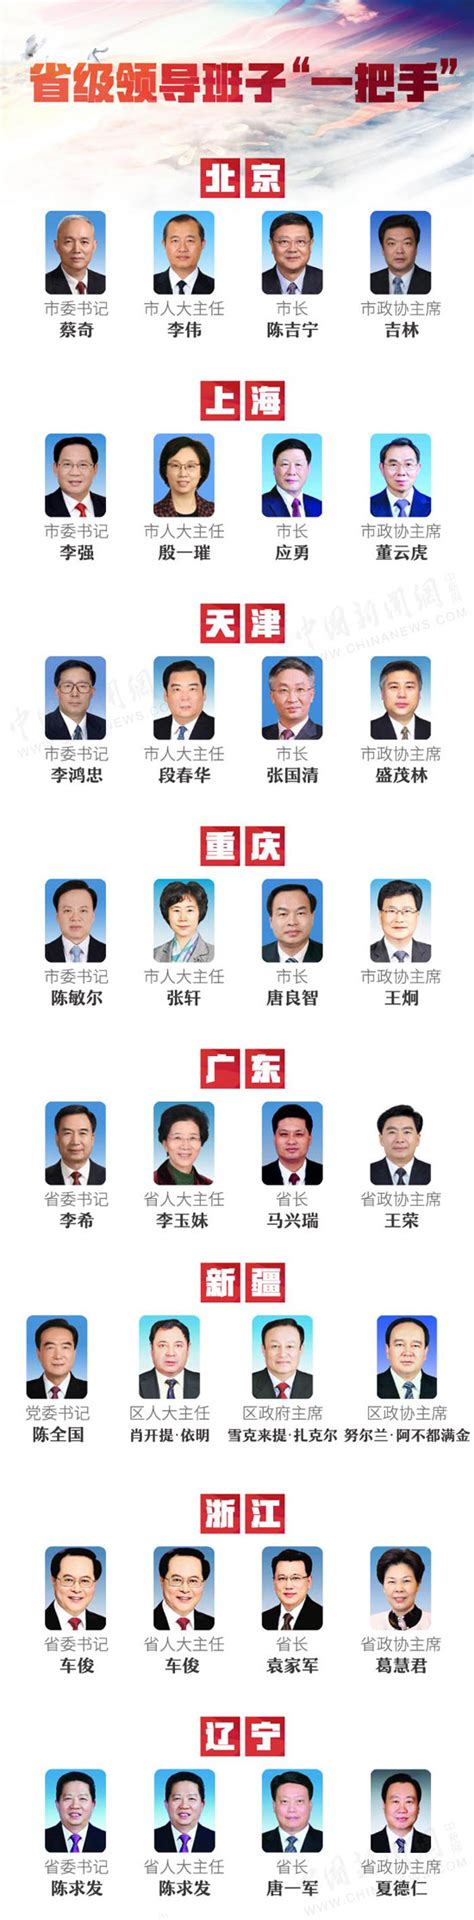 广东省政府领导班子成员 2021广东省长及副省长排名名单-闽南网